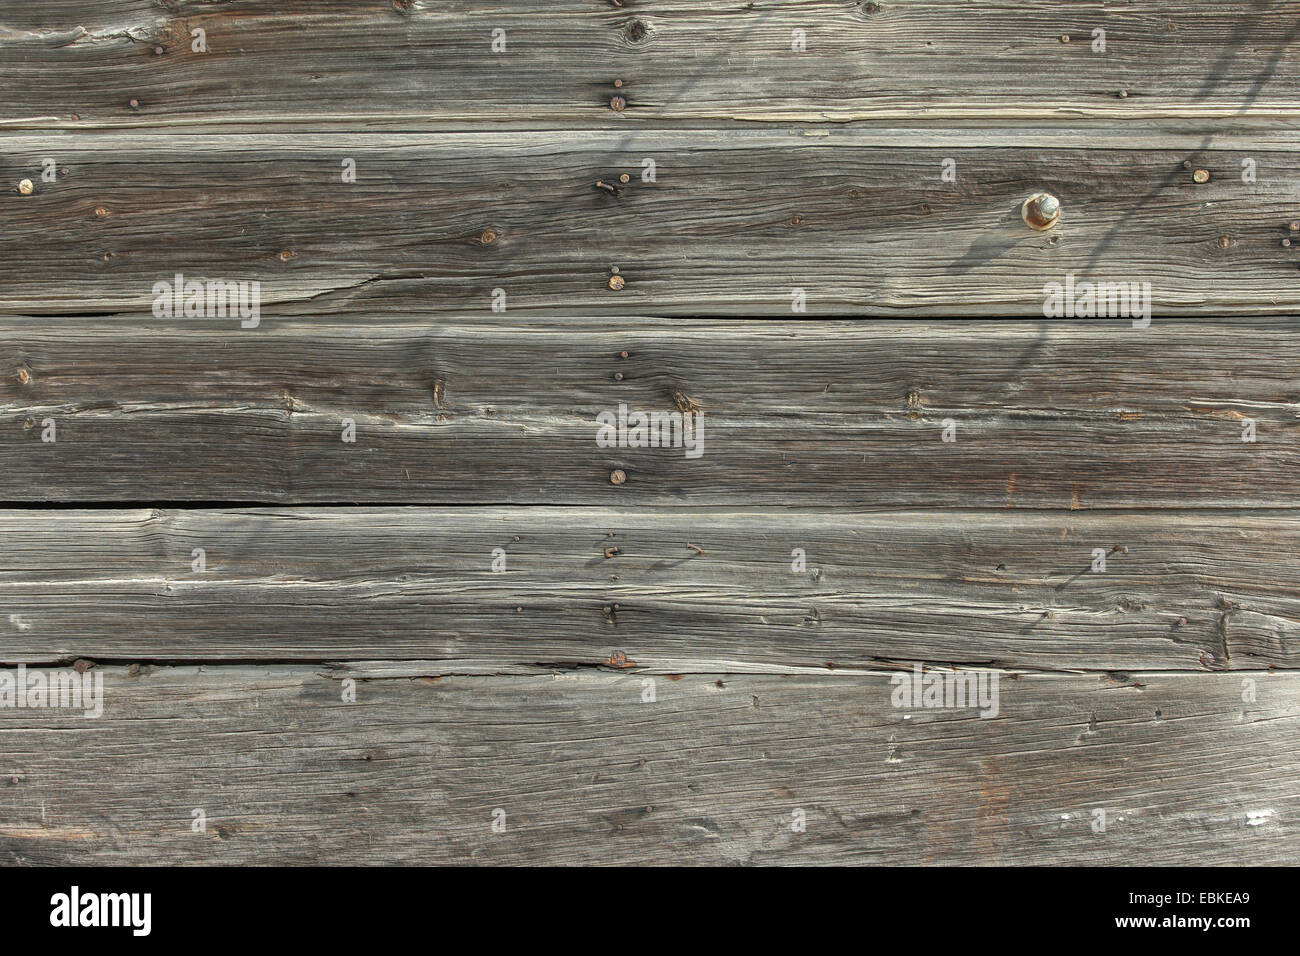 Old wood panels background Stock Photo